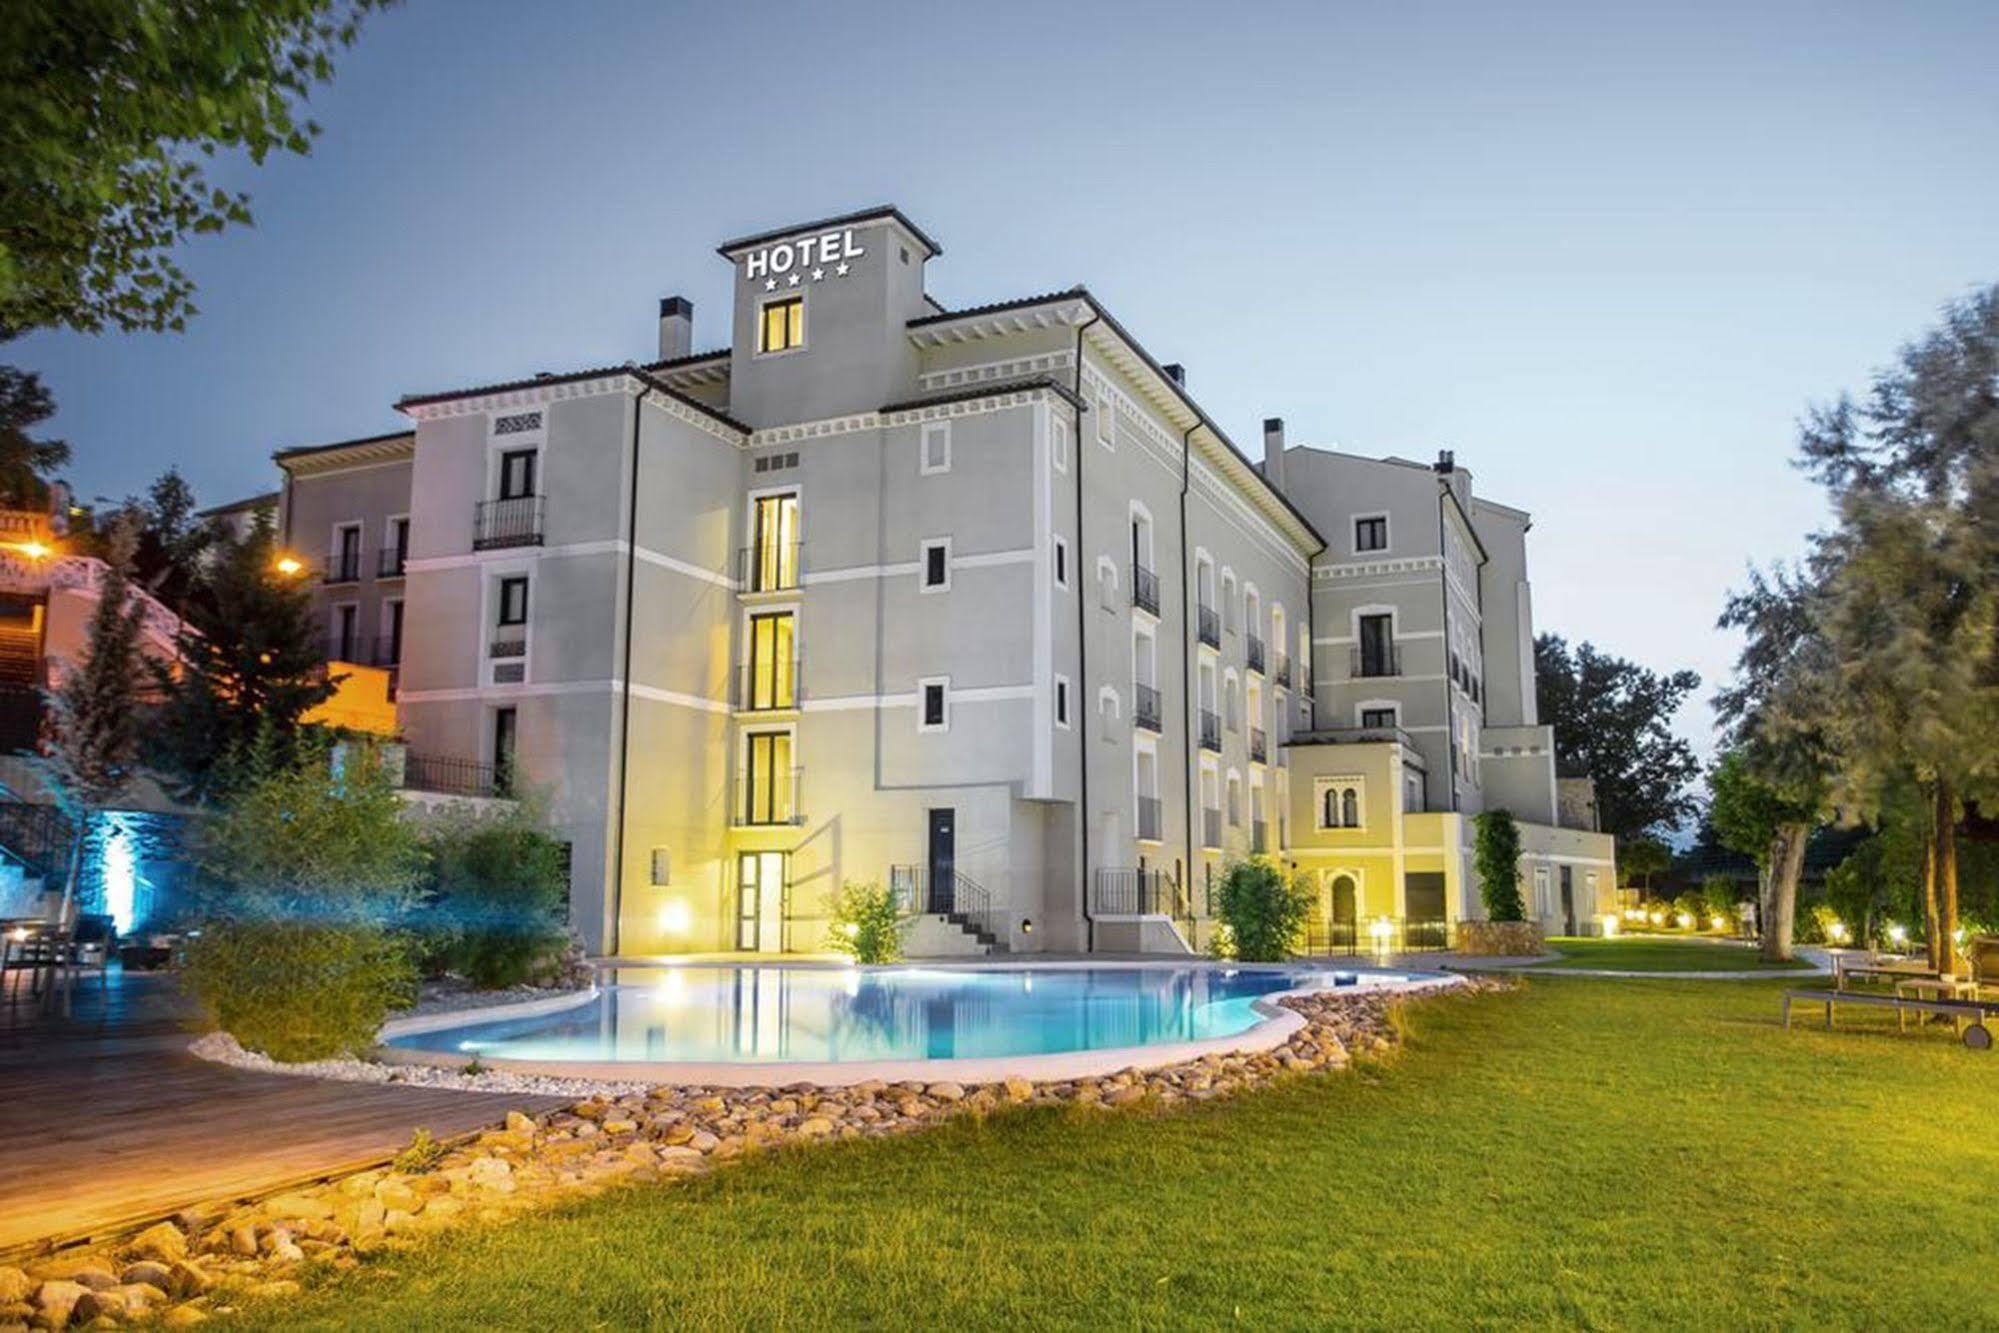 Hotel Balneario Alhama de Aragón Eksteriør billede